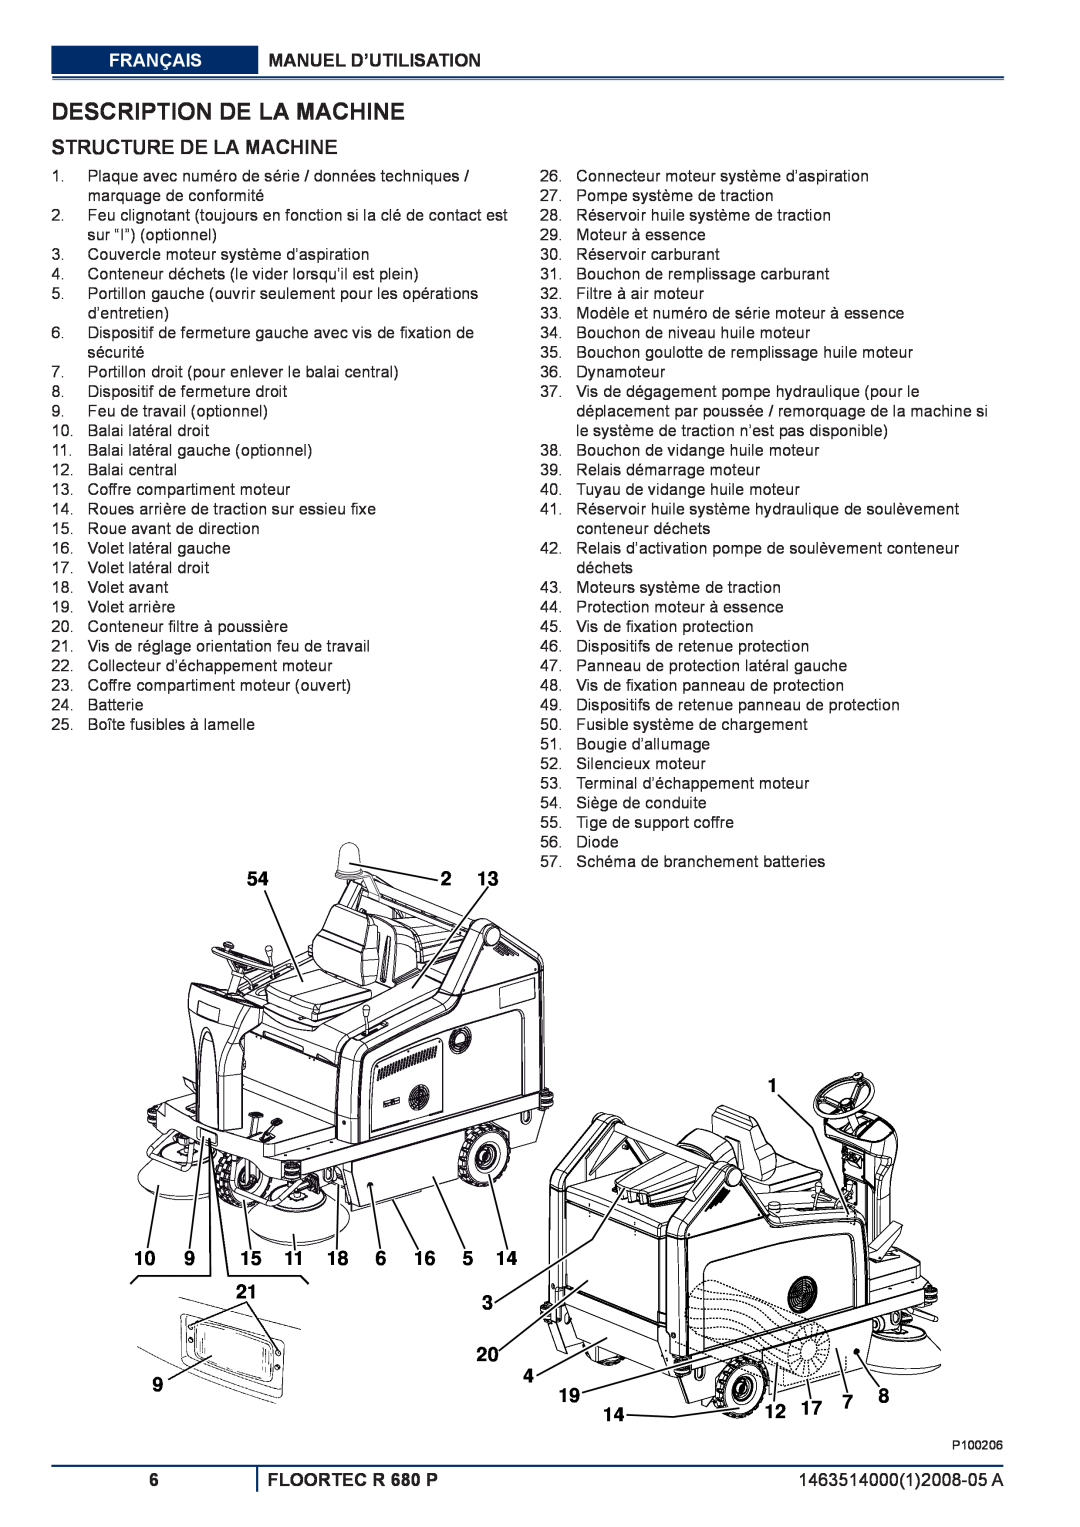 Nilfisk-ALTO R 680 P manuel dutilisation Description De La Machine, Structure De La Machine 